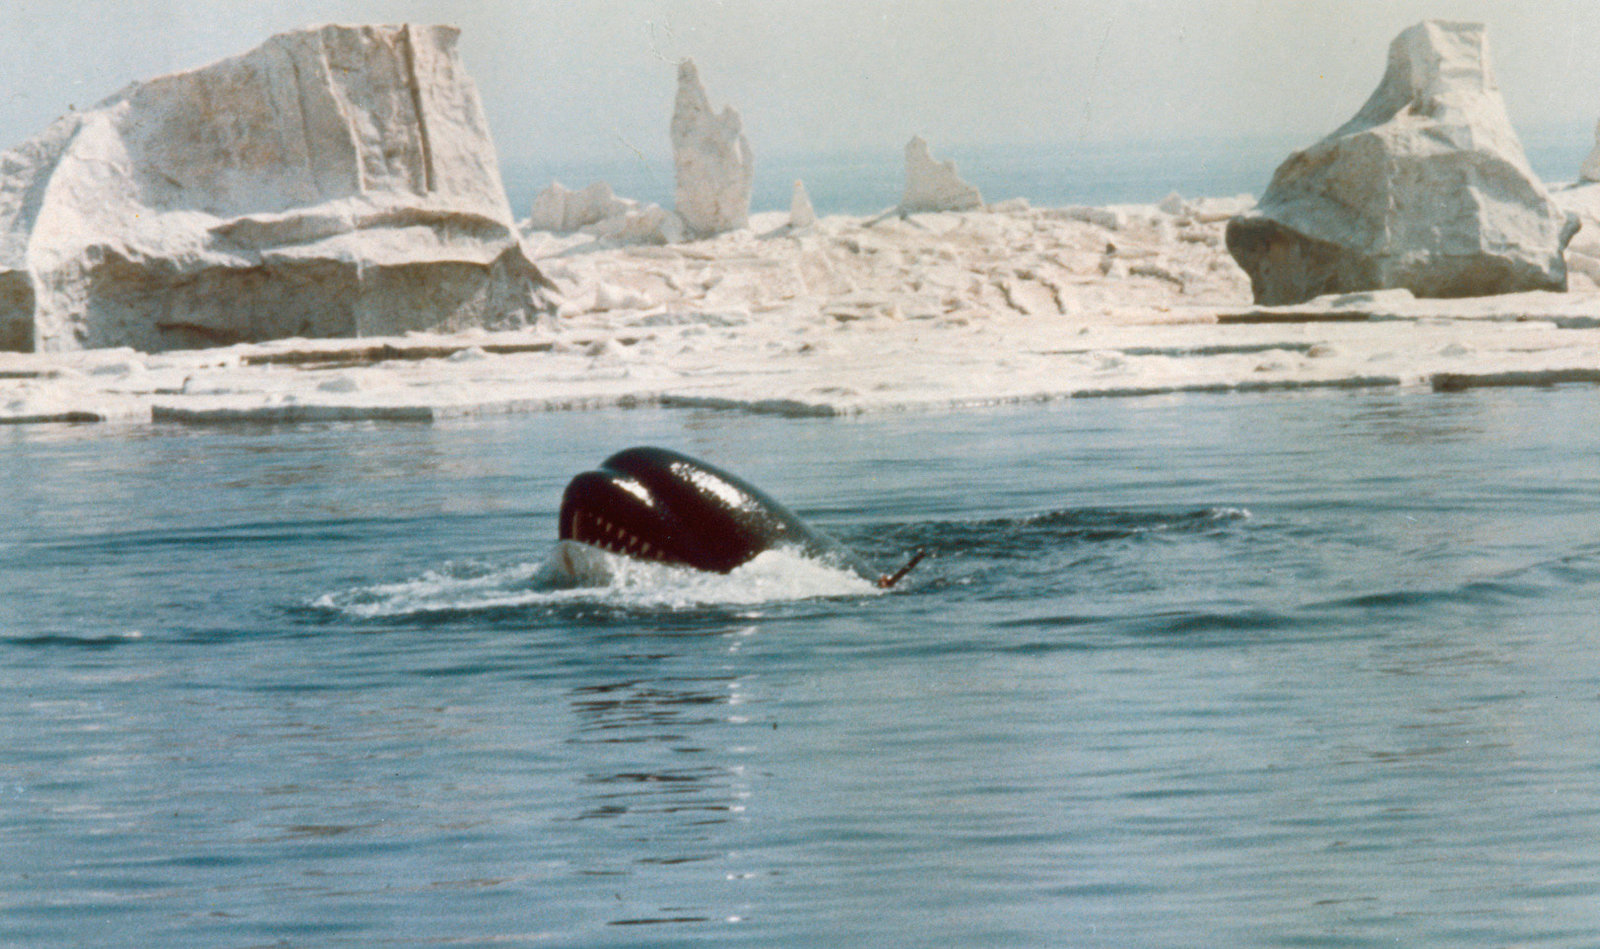 Orca, der Killerwal (blu-ray)